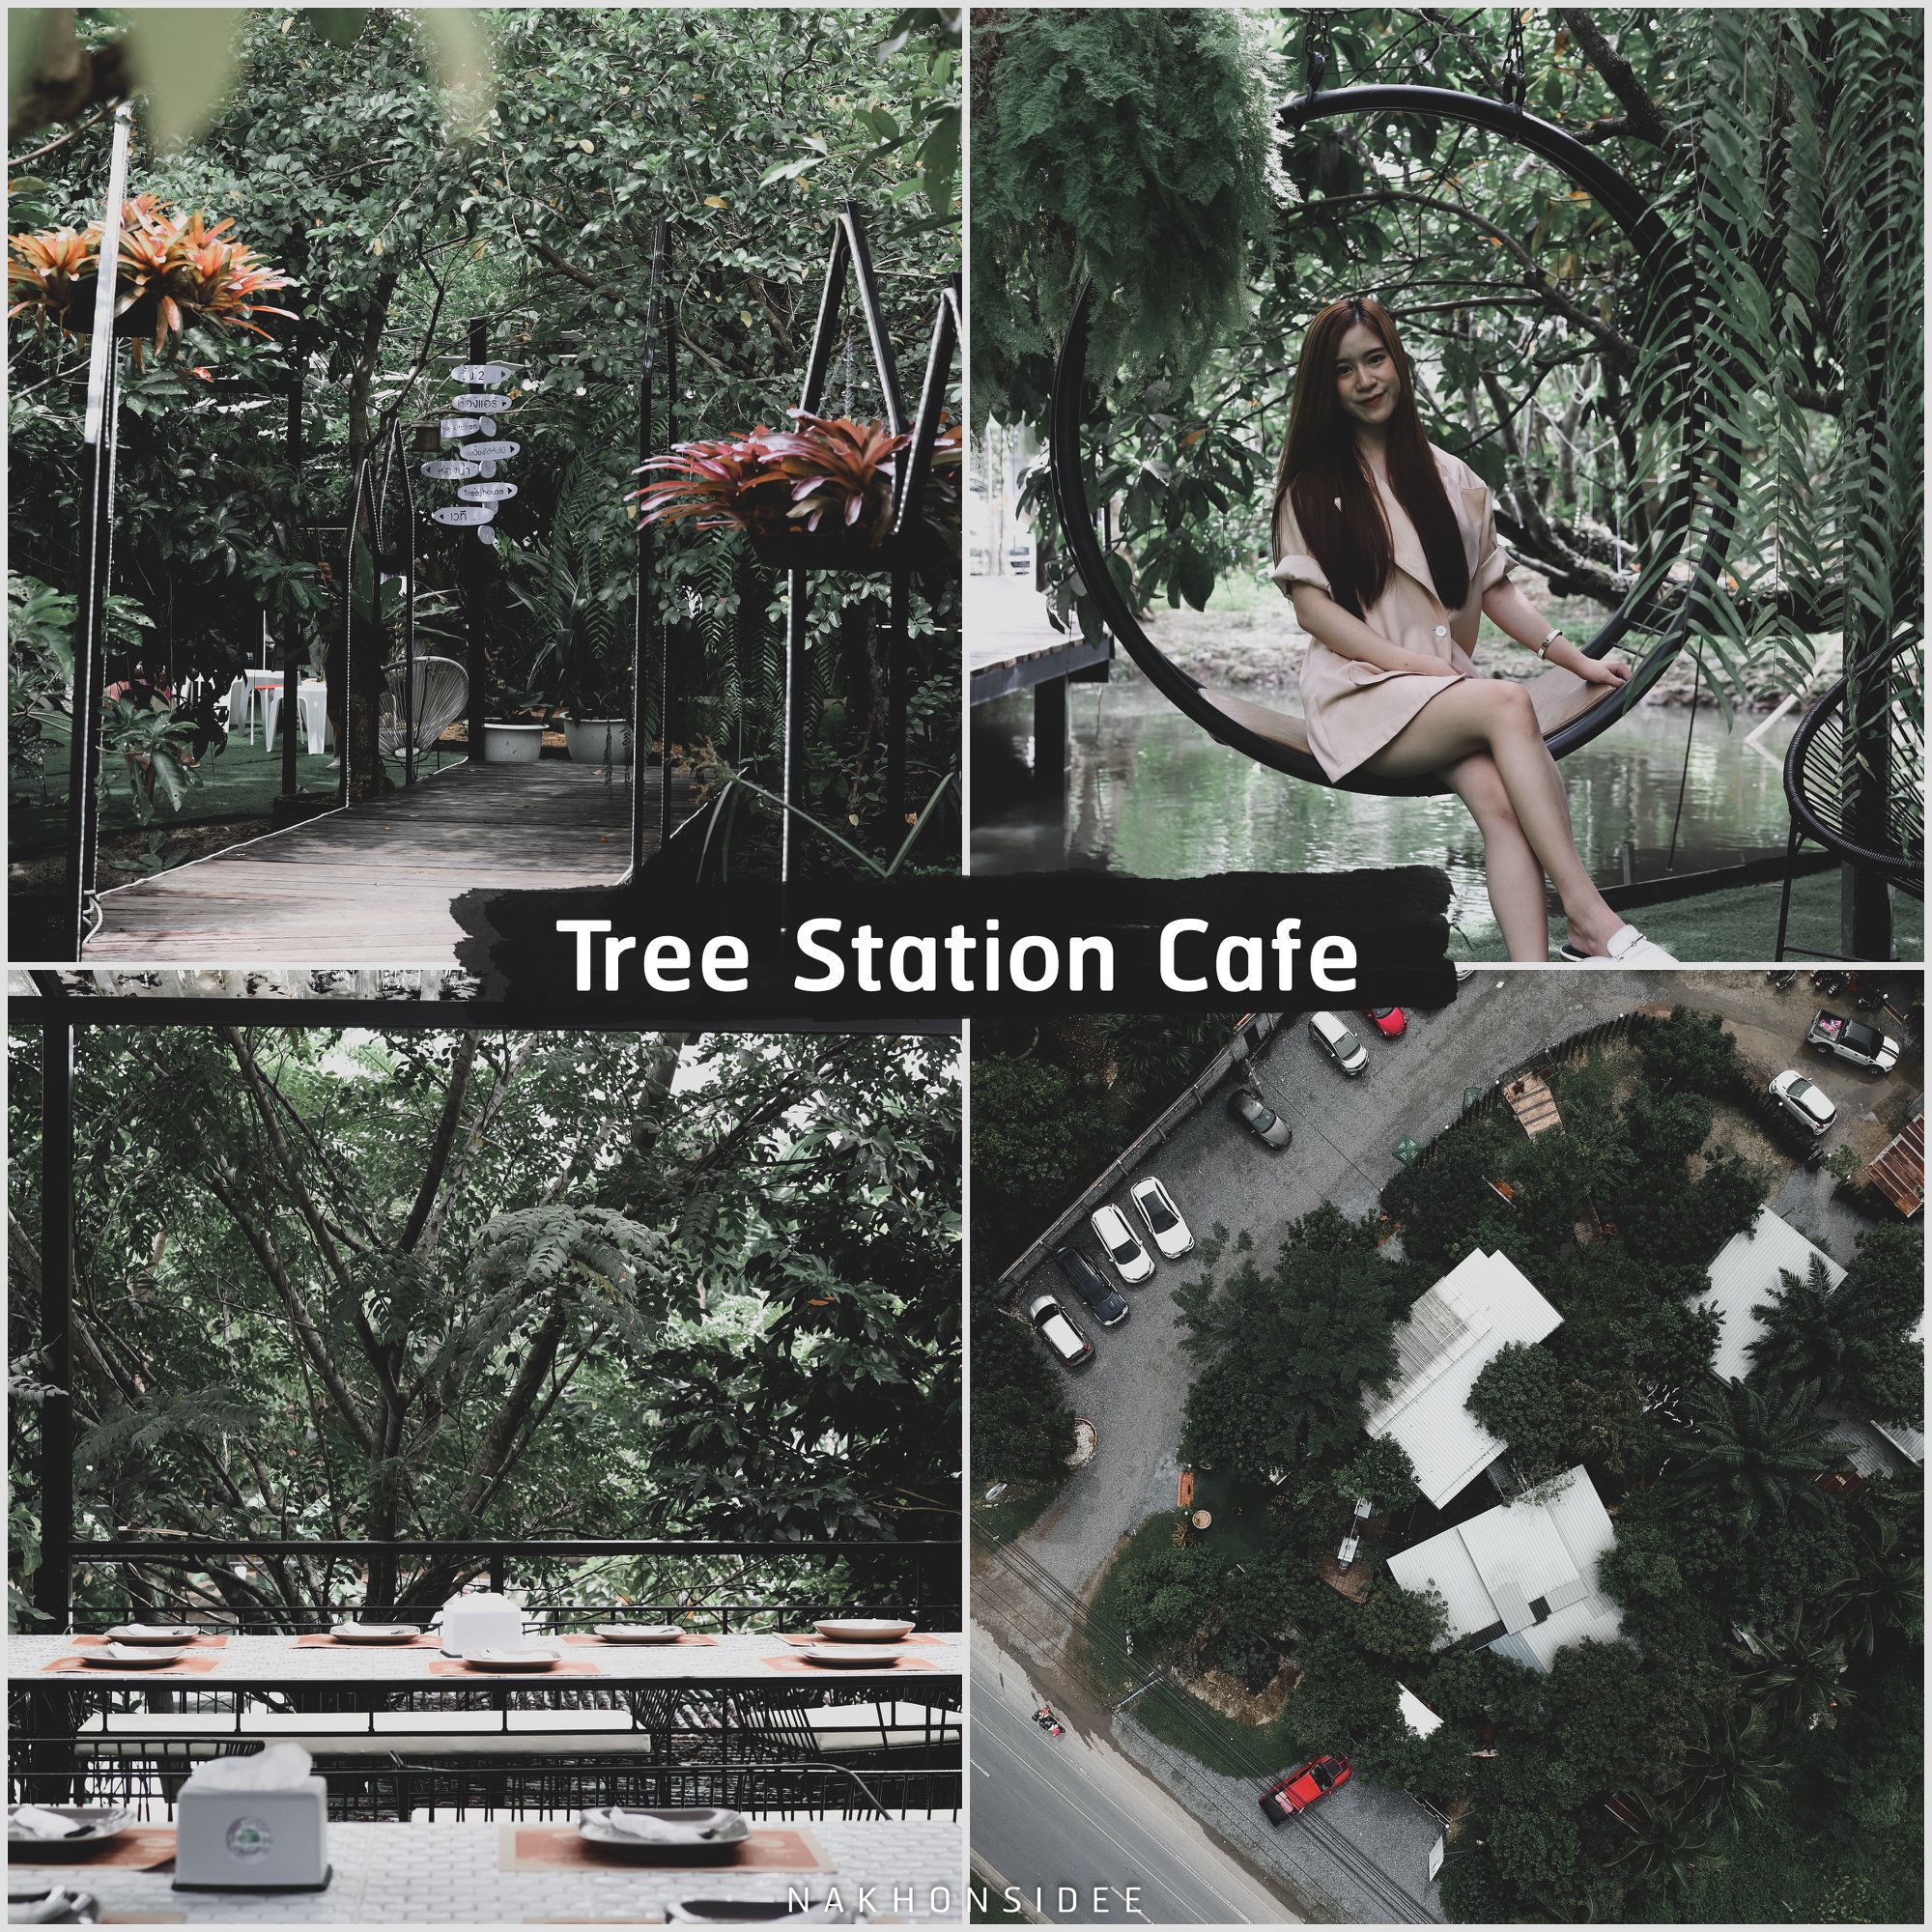  Tree-Station-Cafe
คลิกที่นี่ คาเฟ่สวย,วิวหลักล้าน,นครศรีธรรมราช,รวมcafe,คาเฟ่,ร้านอาหาร,ร้านกาแฟ,ภูเขา